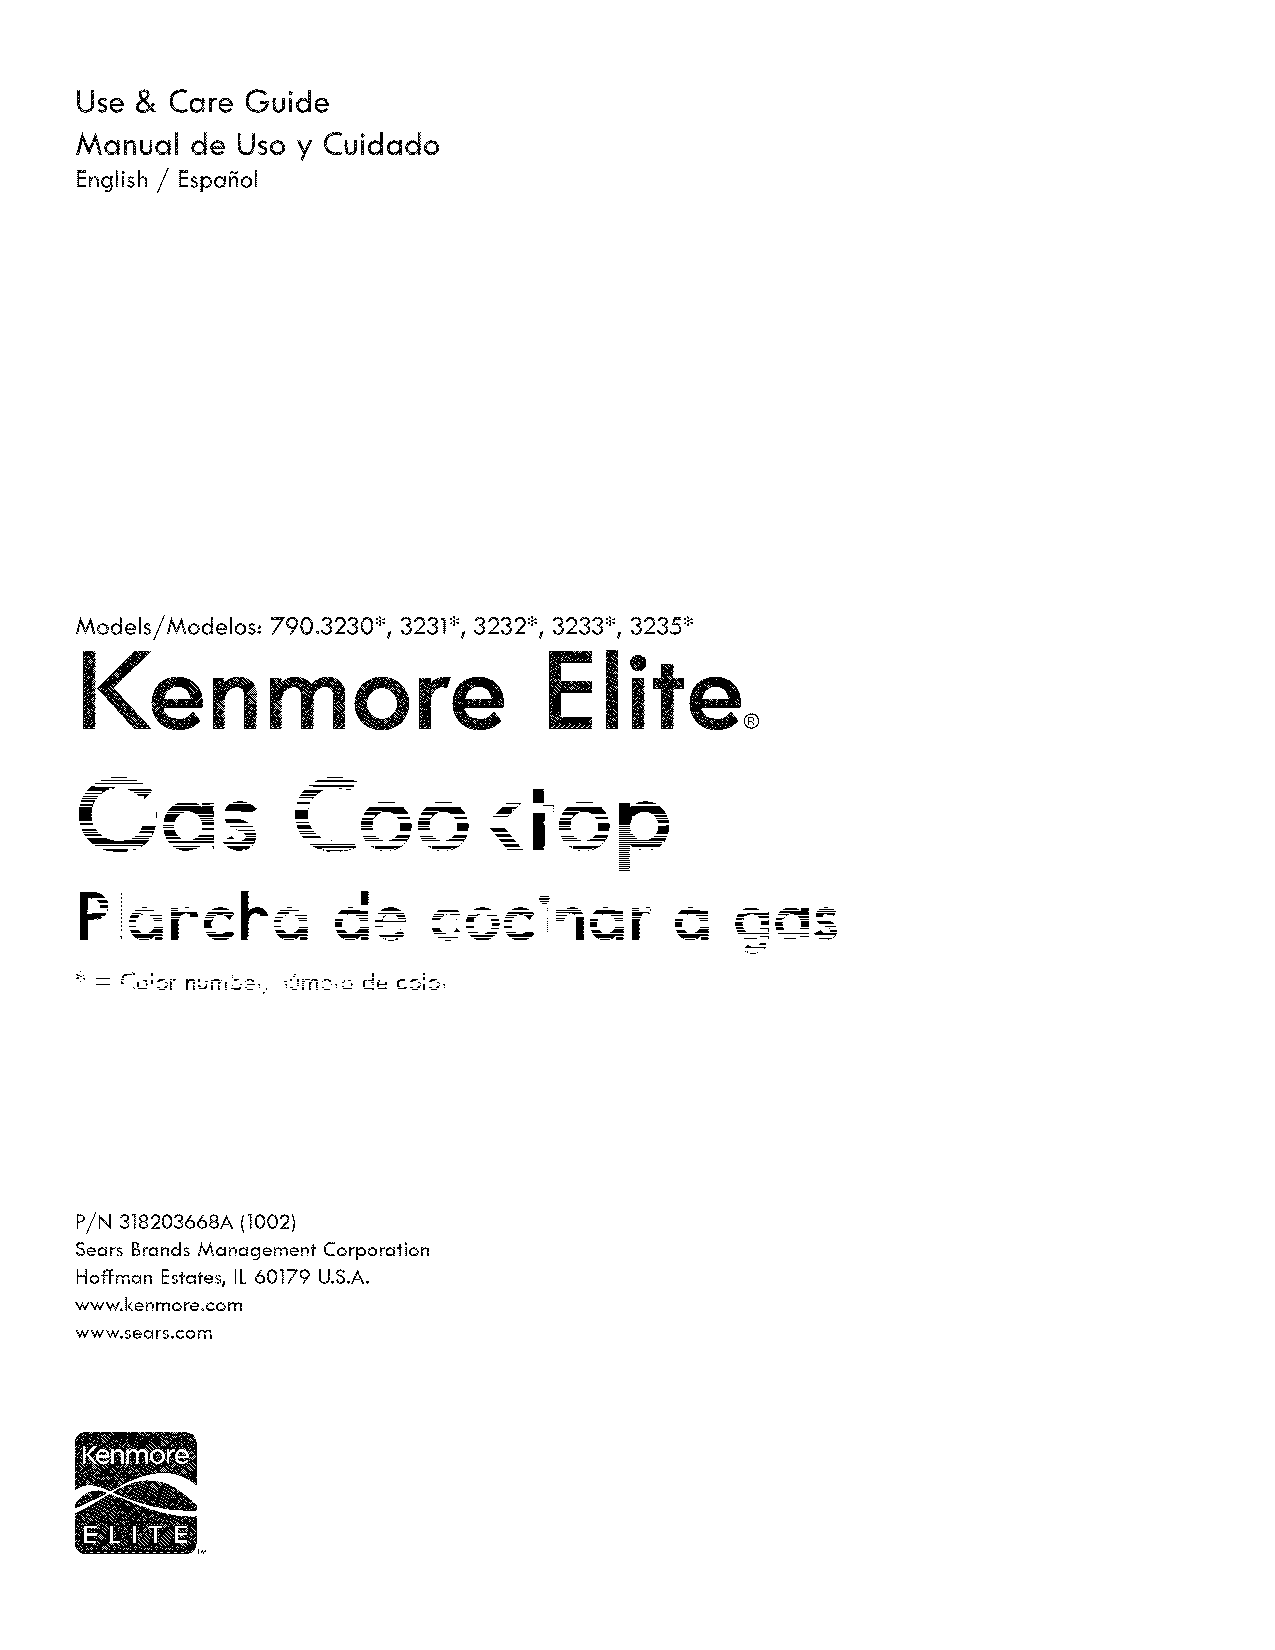 Kenmore 790.323, 3235, 3231, 3232 User Manual